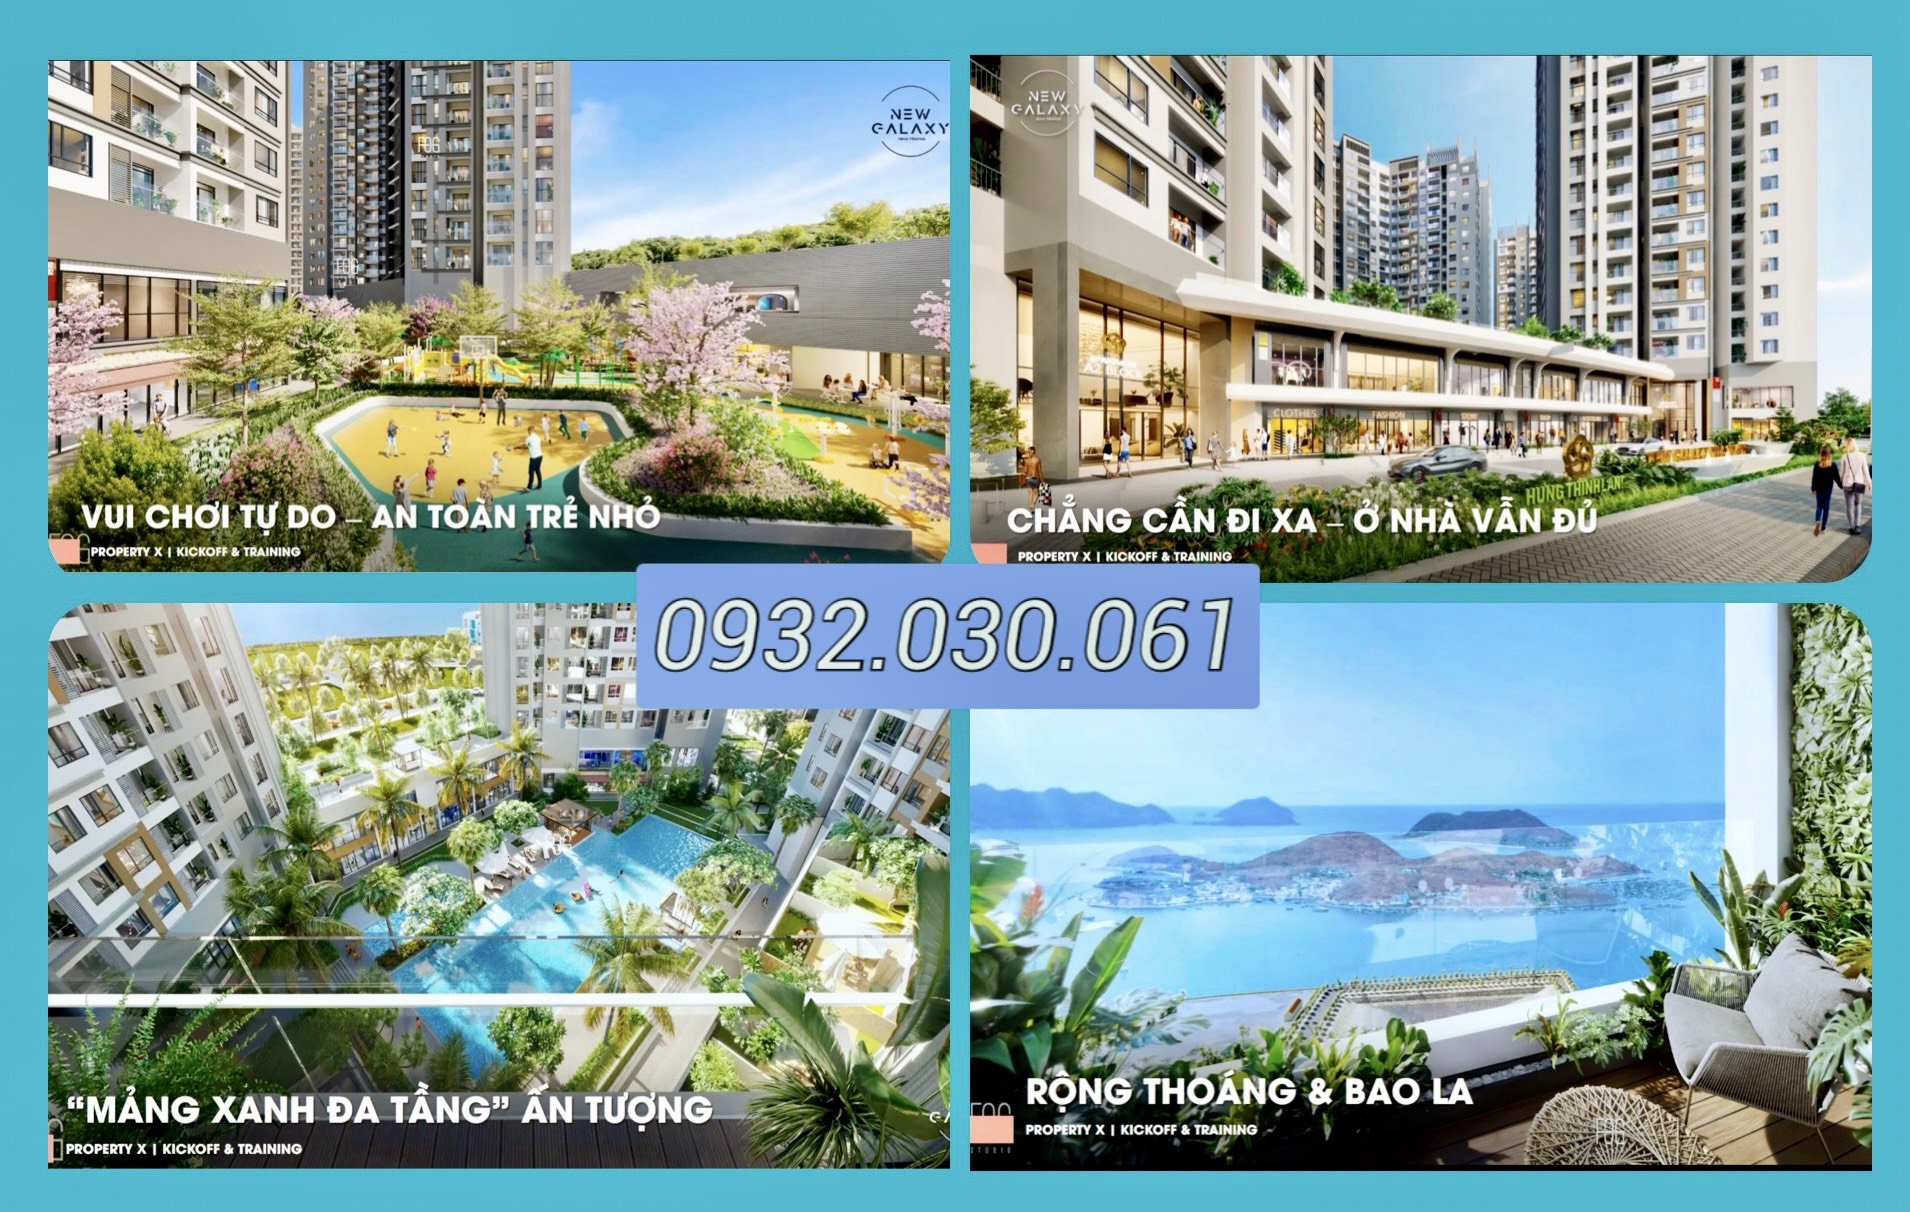 Cần bán Căn hộ chung cư dự án Khu đô thị biển An Viên, Diện tích 69m², Giá 55 Triệu/m² - LH: 0932030061 3